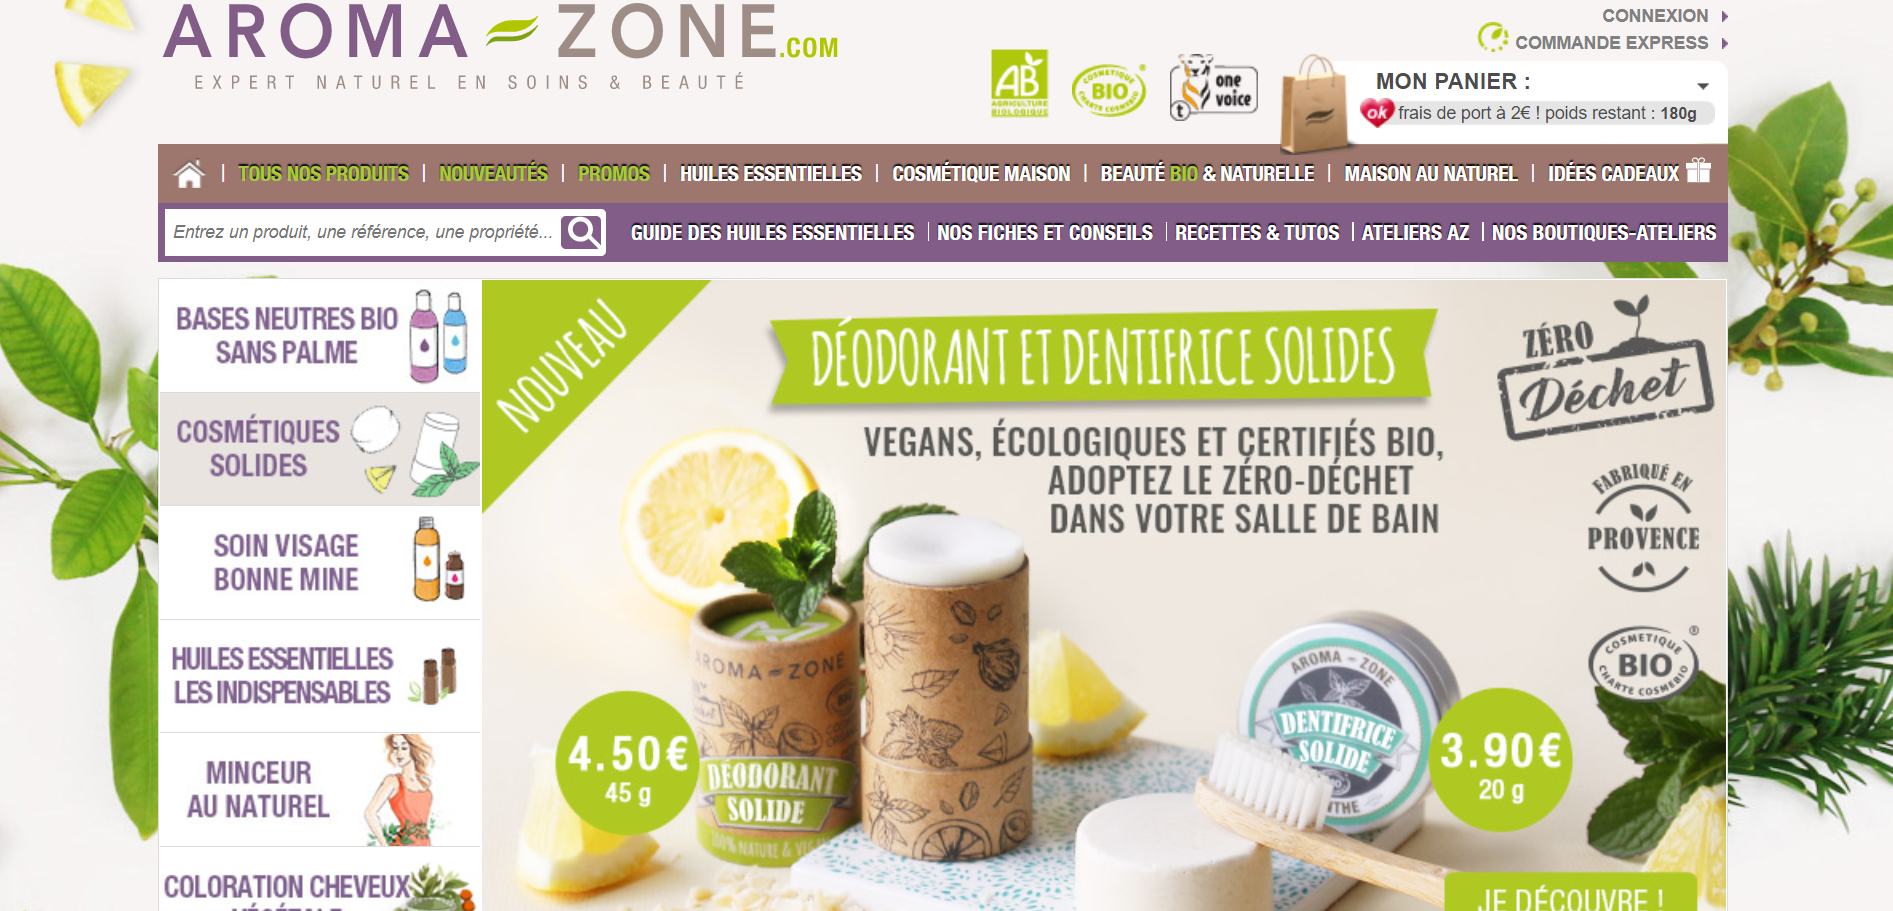 法国投资公司 Eurazeo 斥资4.1亿欧元收购DIY芳香和护肤品牌 Aroma-Zone 少数股权